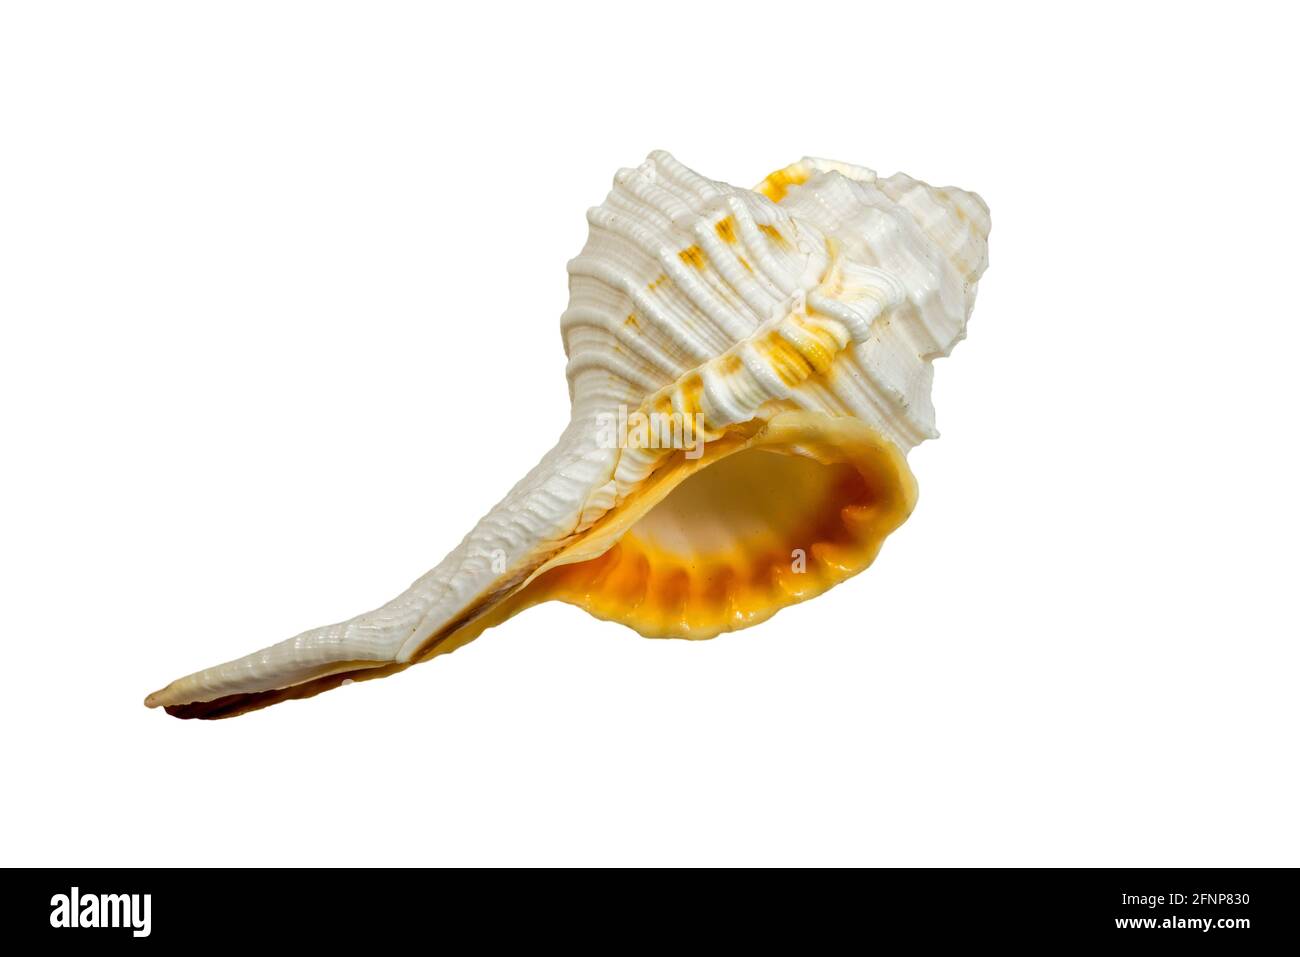 Haustellum specie, lumache di mare, molluschi gasteropodi marini della famiglia Muricidae, le lumache murex / lumache di roccia su sfondo bianco Foto Stock